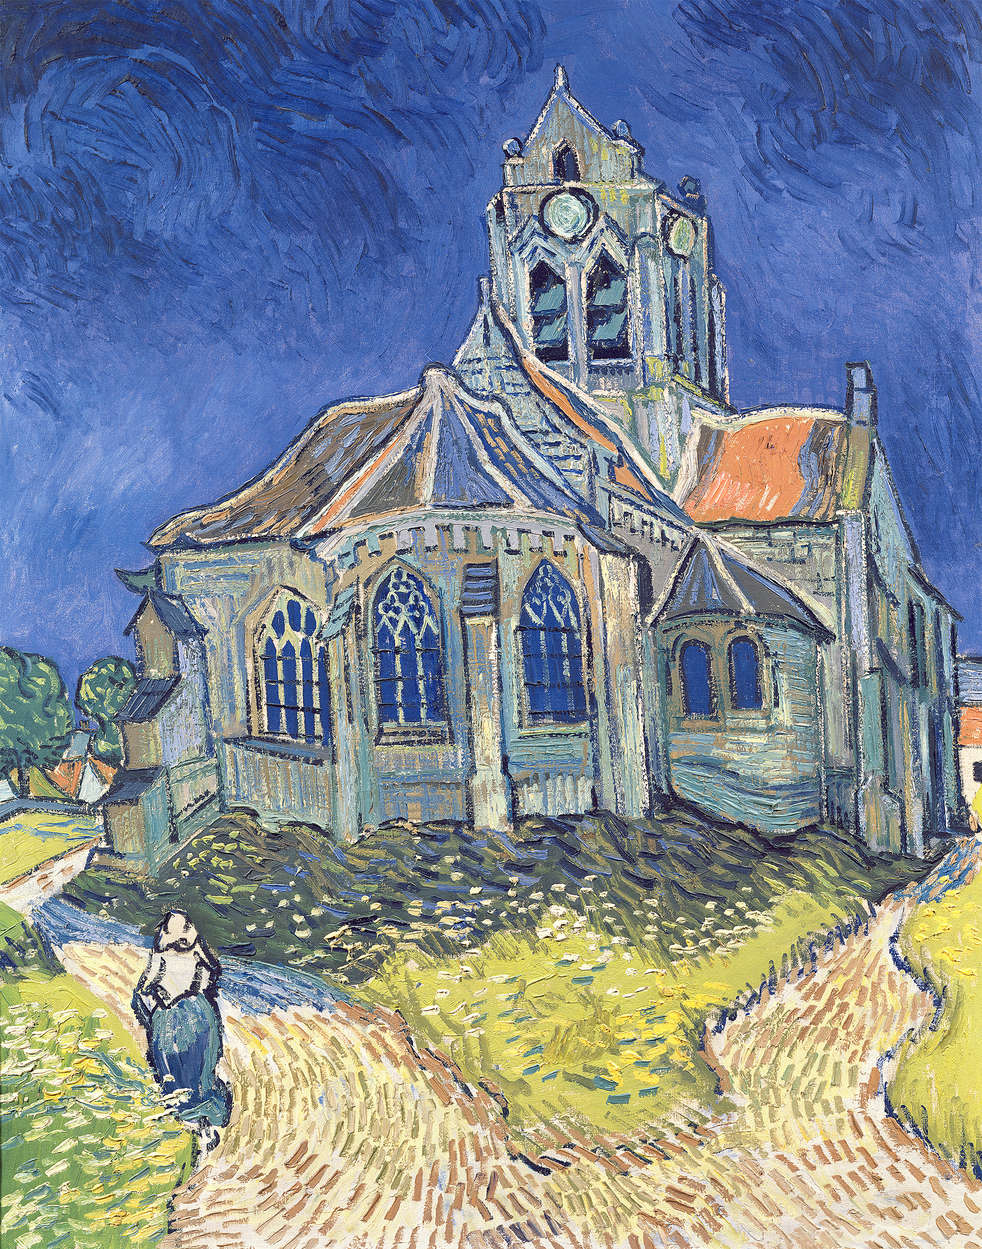             Mural "La iglesia de Auvers" de Vincent van Gogh
        